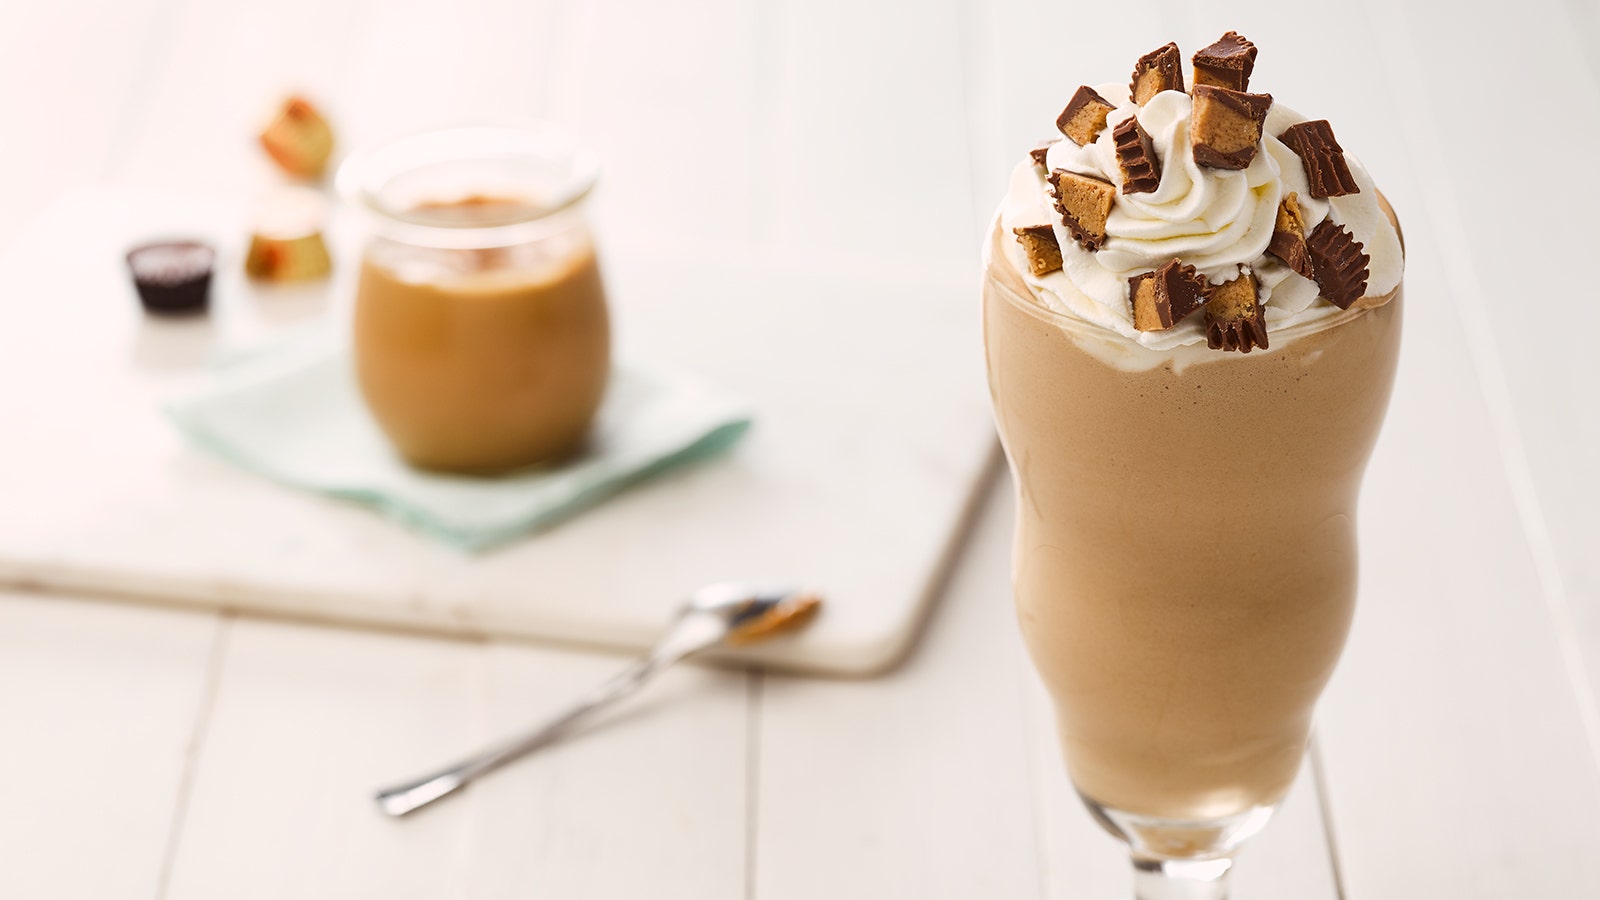 REESE'S Peanut Butter Cup Milkshake